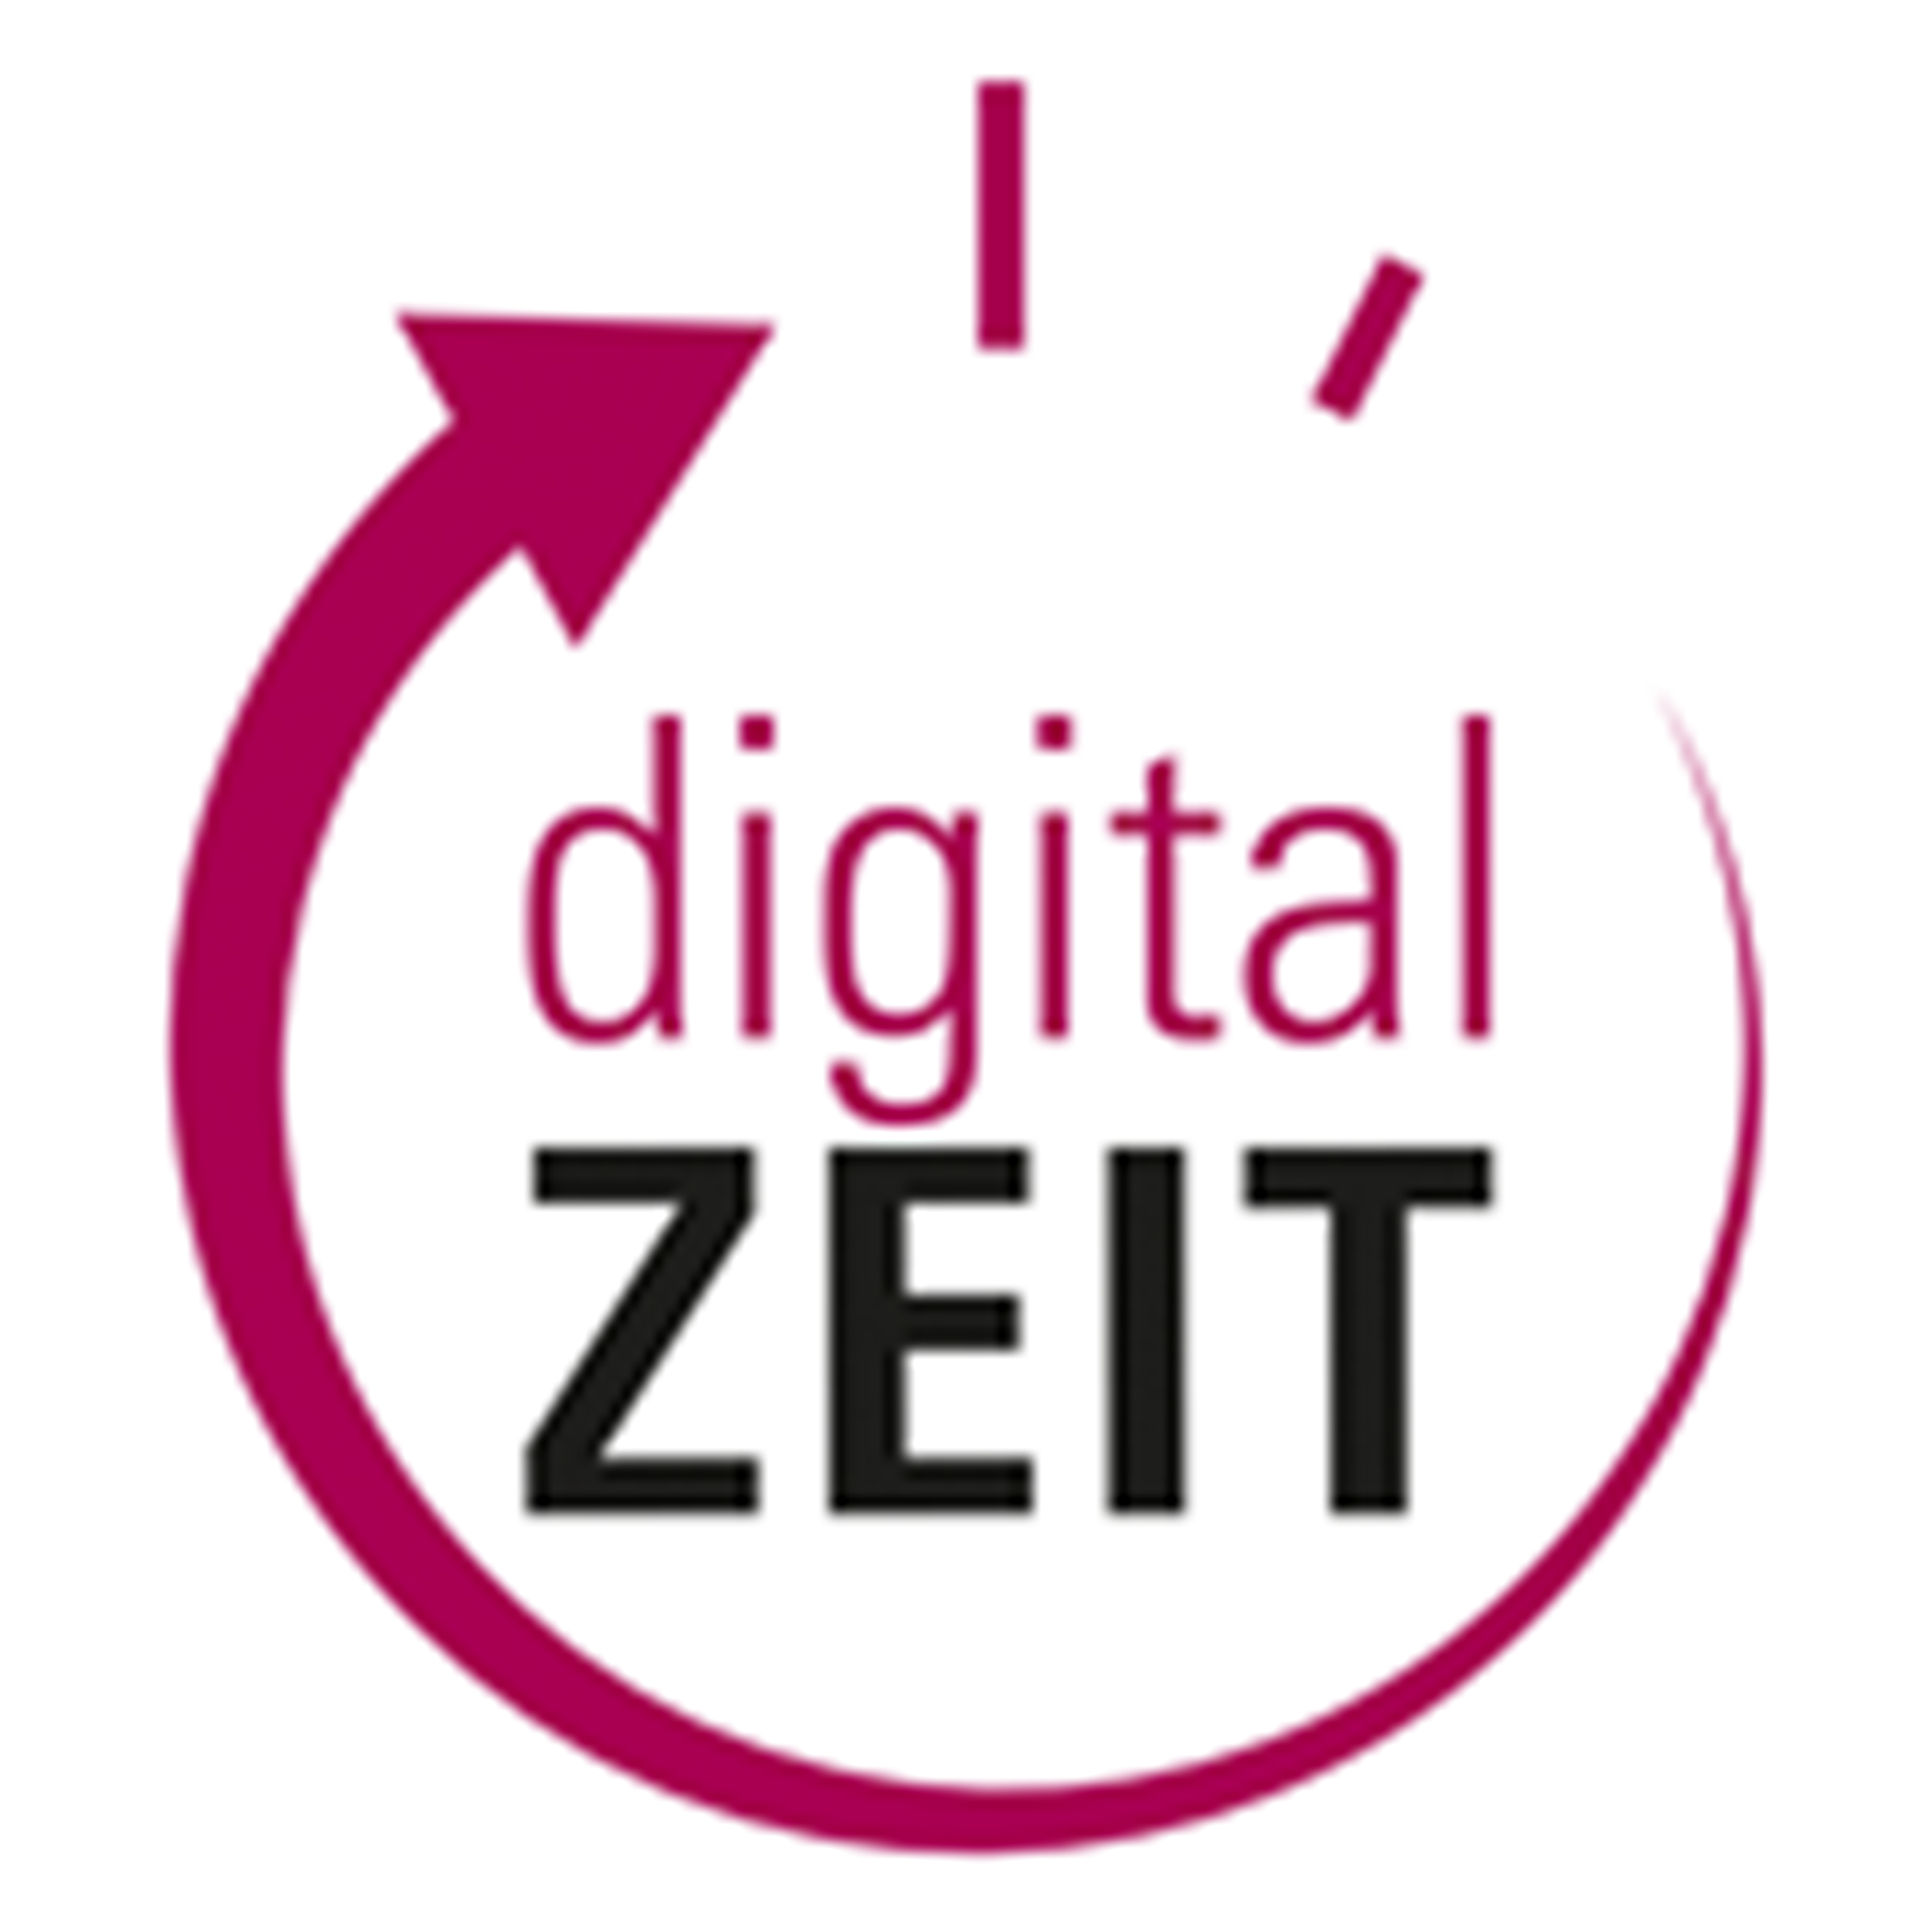 digital ZEIT GmbH